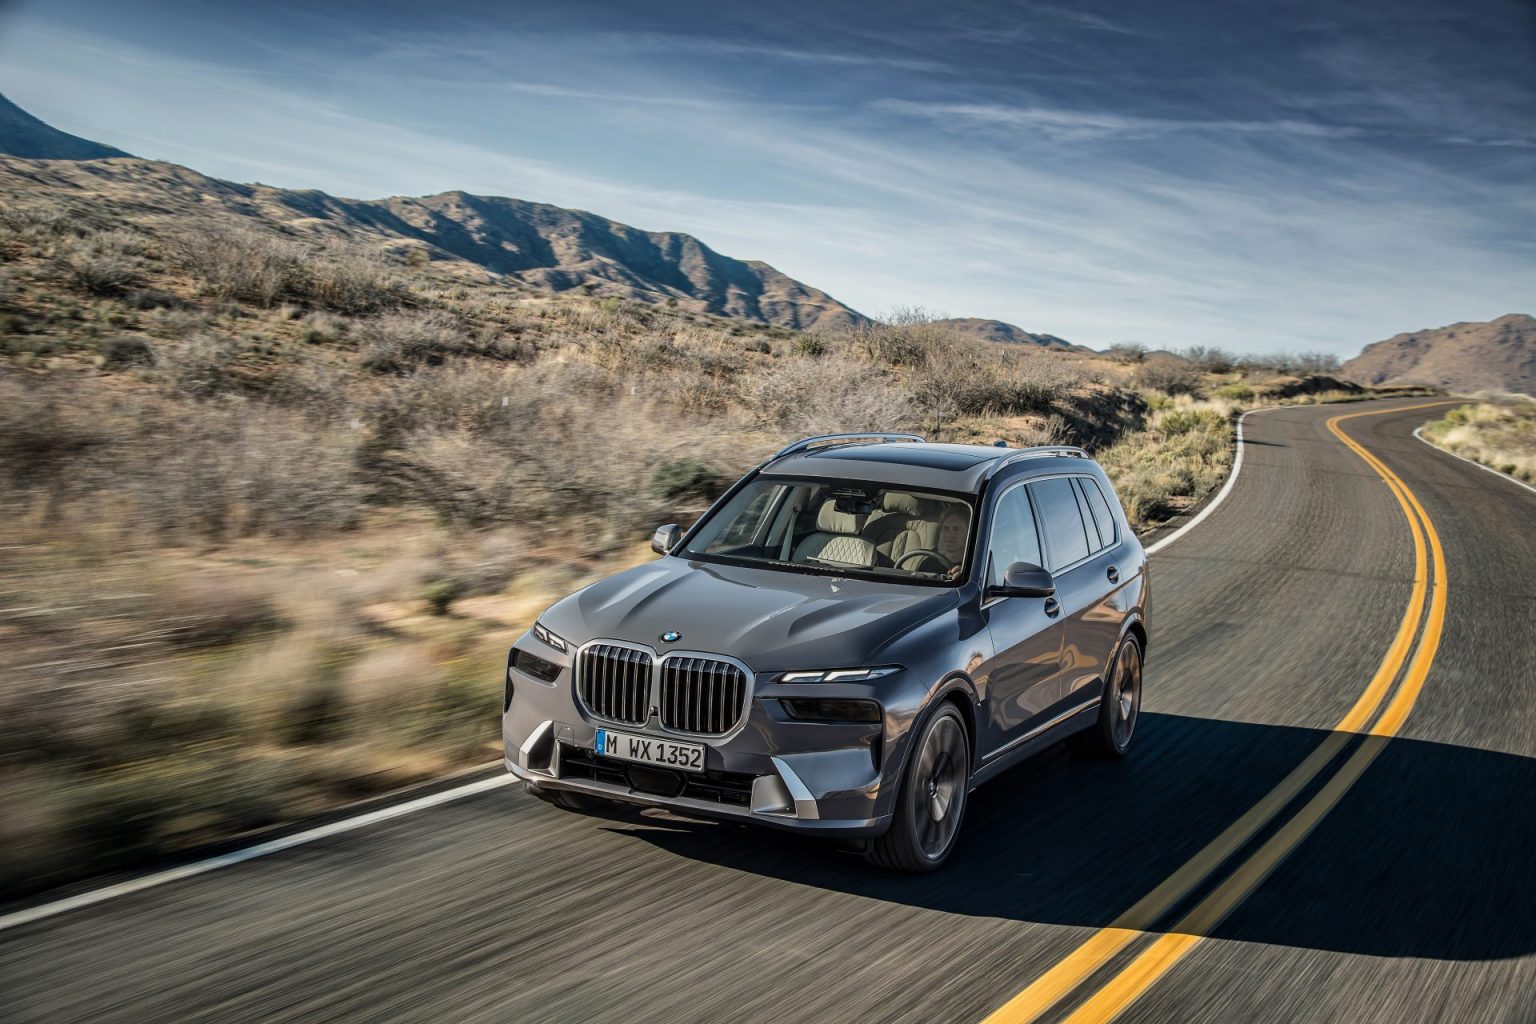 Uuenenud BMW X7 pakub põhivarustusena nii hübriidtehnoloogiat kui õhkvedrustust